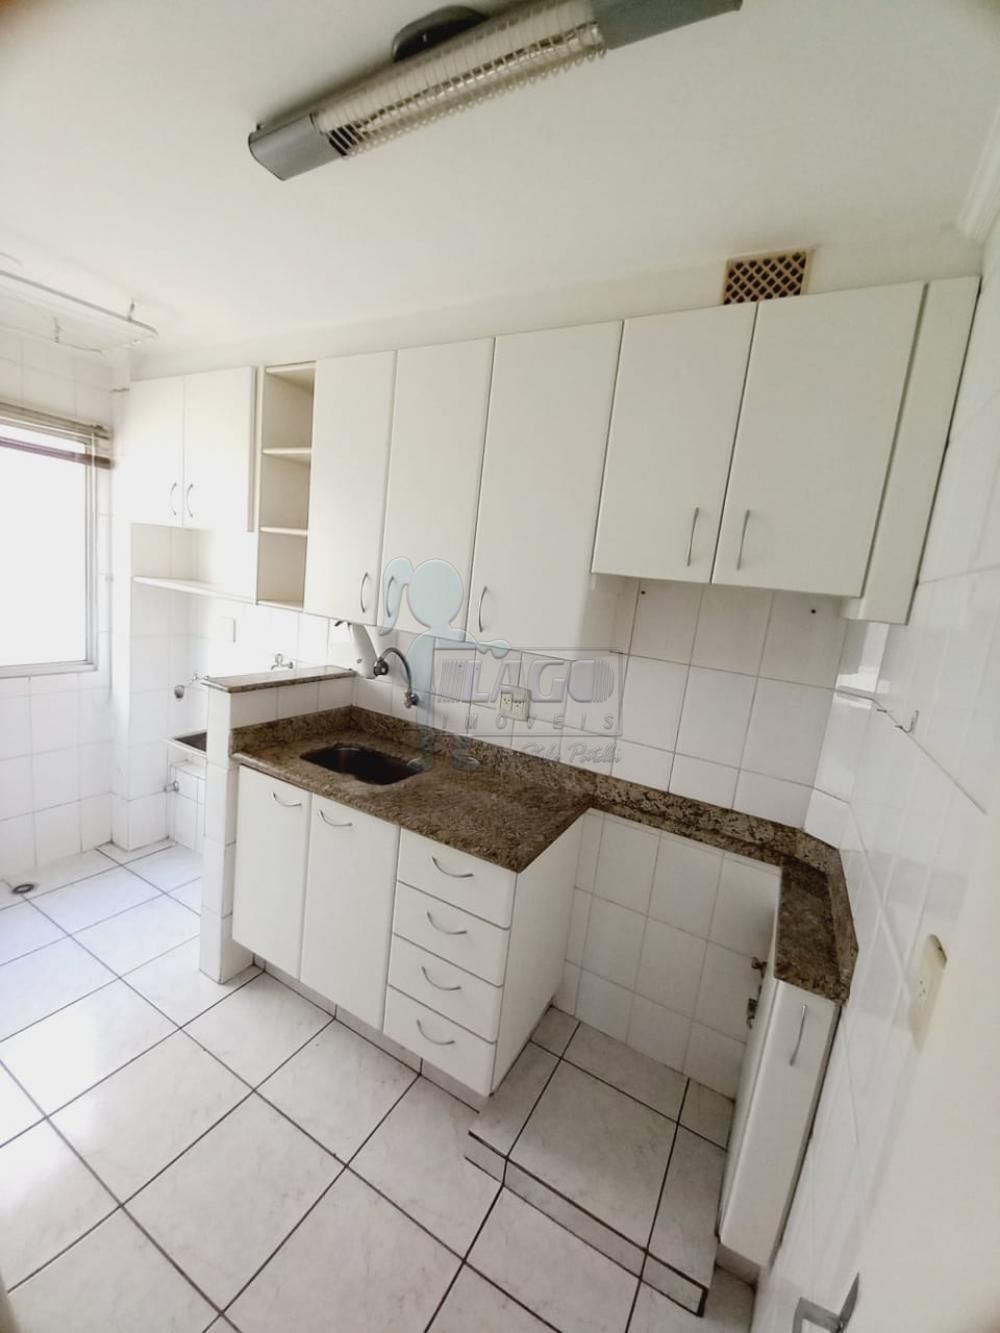 Alugar Apartamentos / Padrão em Ribeirão Preto R$ 650,00 - Foto 5